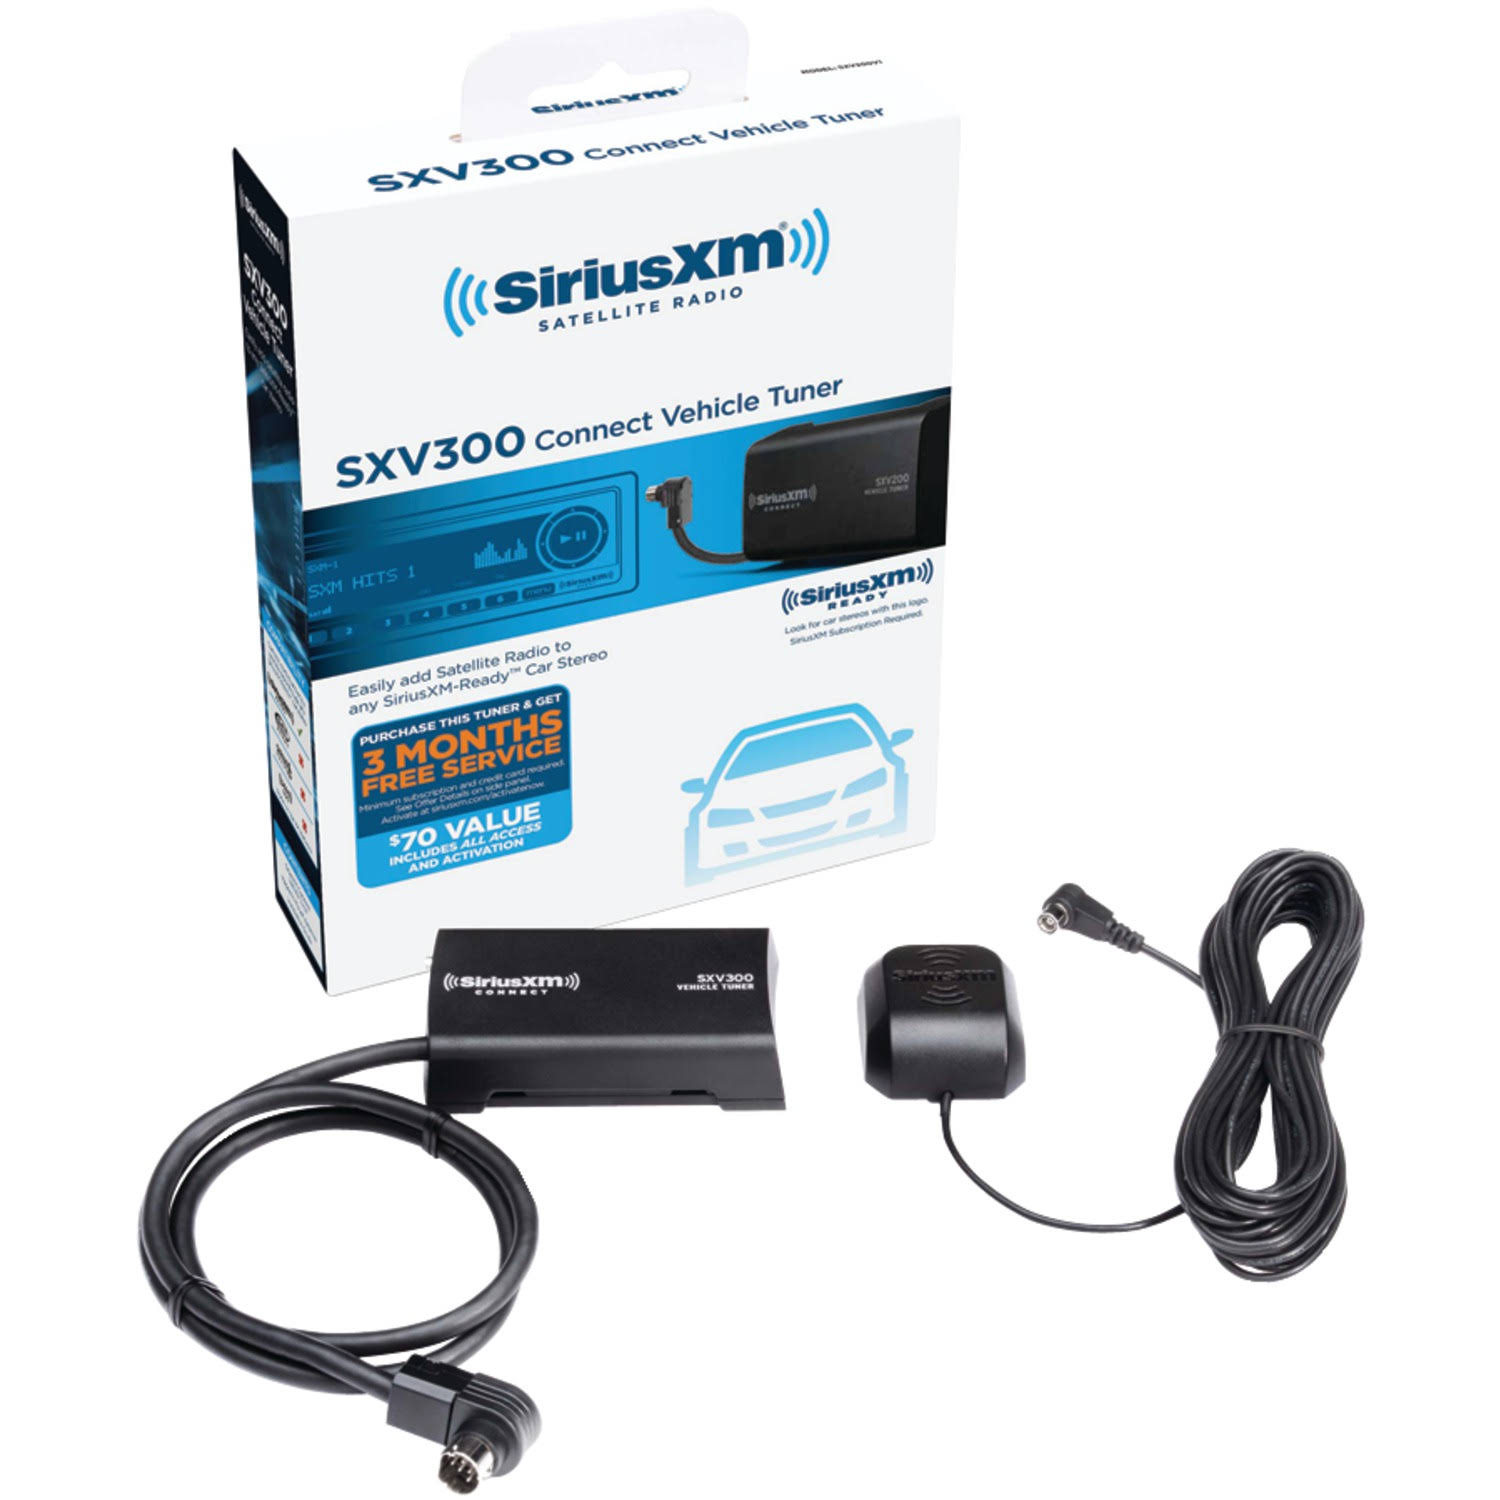 Sirius Xm Satellite Radio SXV300v1 Connect Vehicle Tuner Kit - 300V